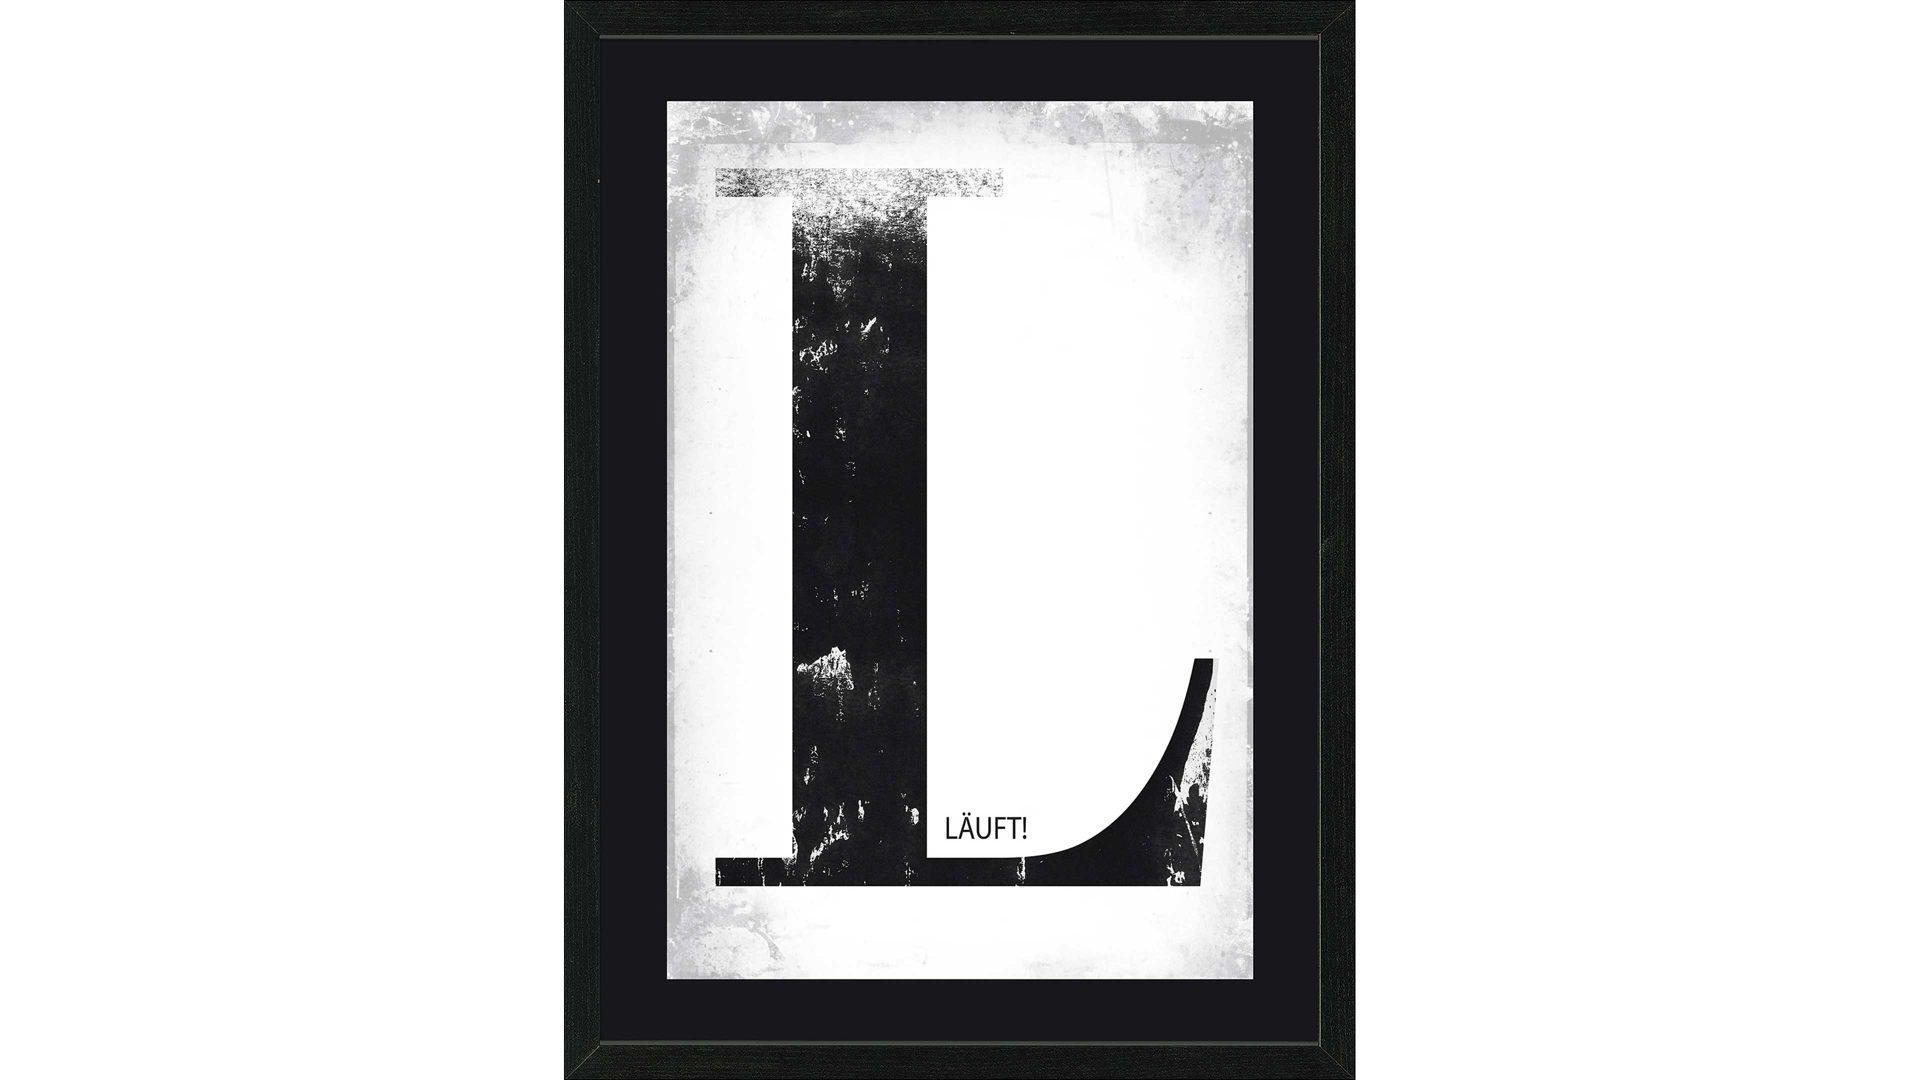 Kunstdruck Pro®art bilderpalette aus Karton / Papier / Pappe in Schwarz PRO®ART Kunstdruck Läuft Schwarz & Weiß - ca. 55 x 75 cm